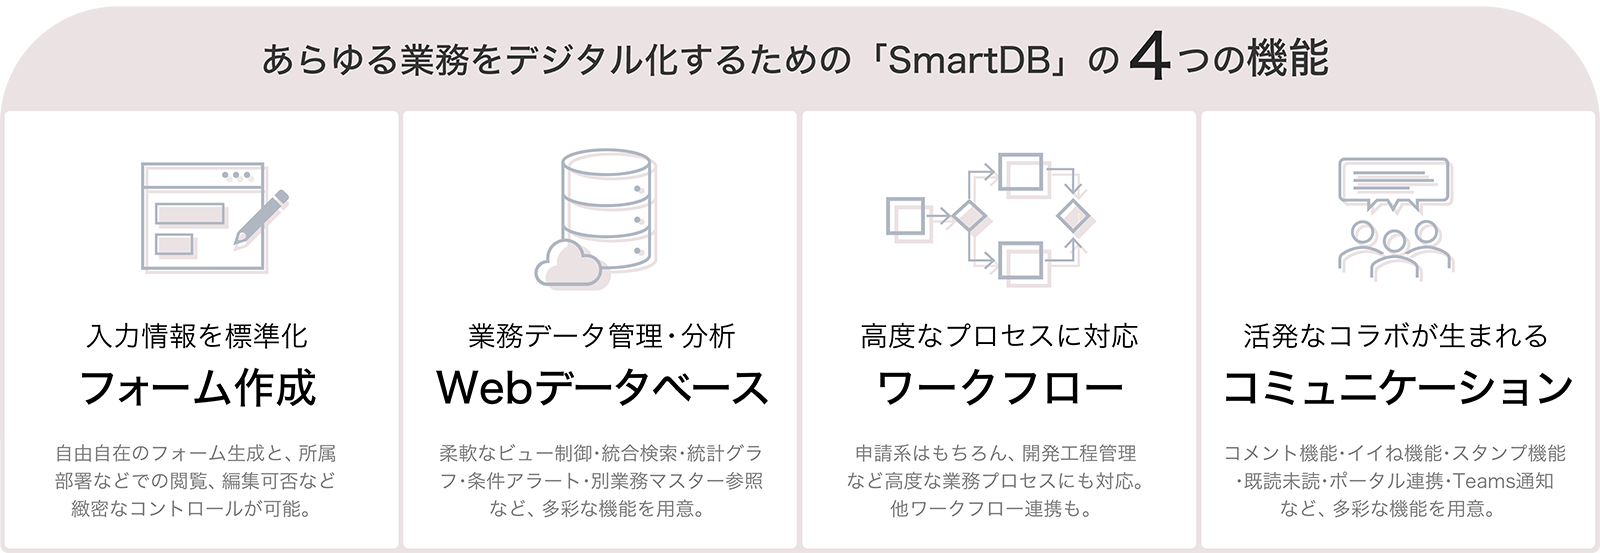 あらゆる業務をデジタル化する「SmartDB」の4つの機能